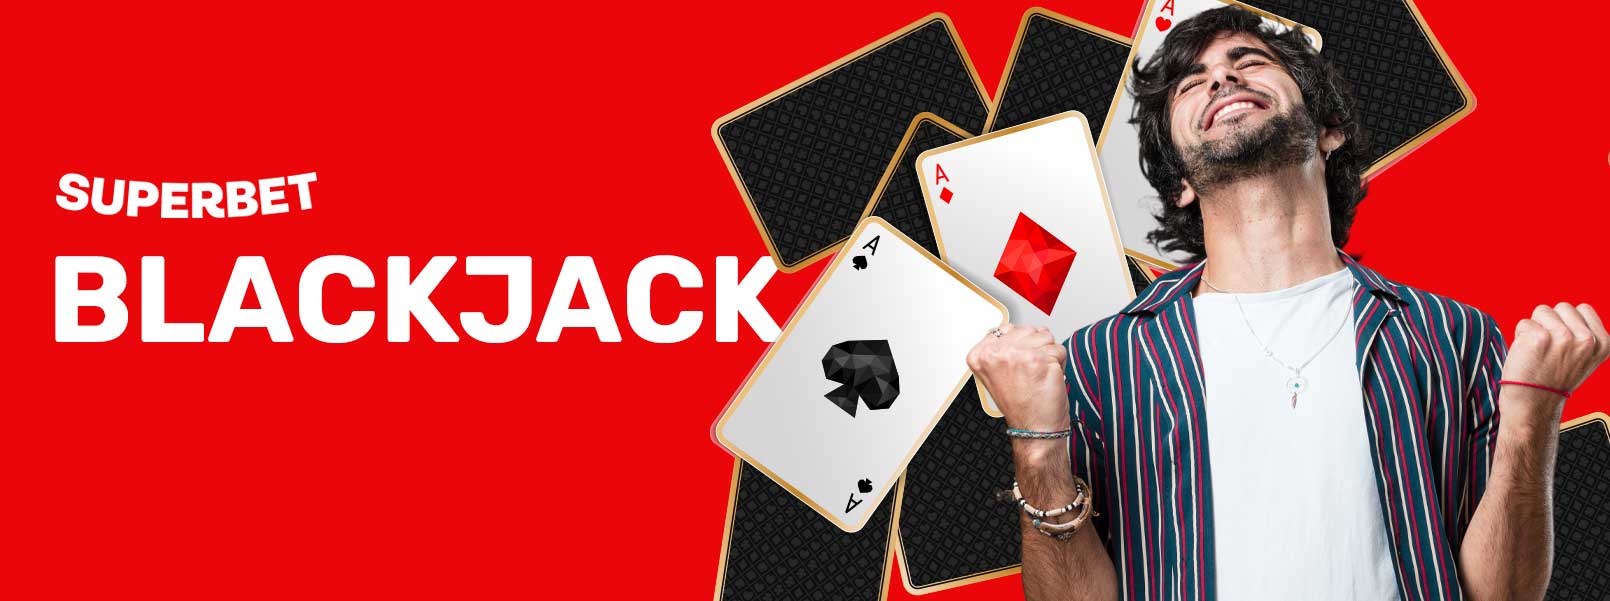 blackjack superbet